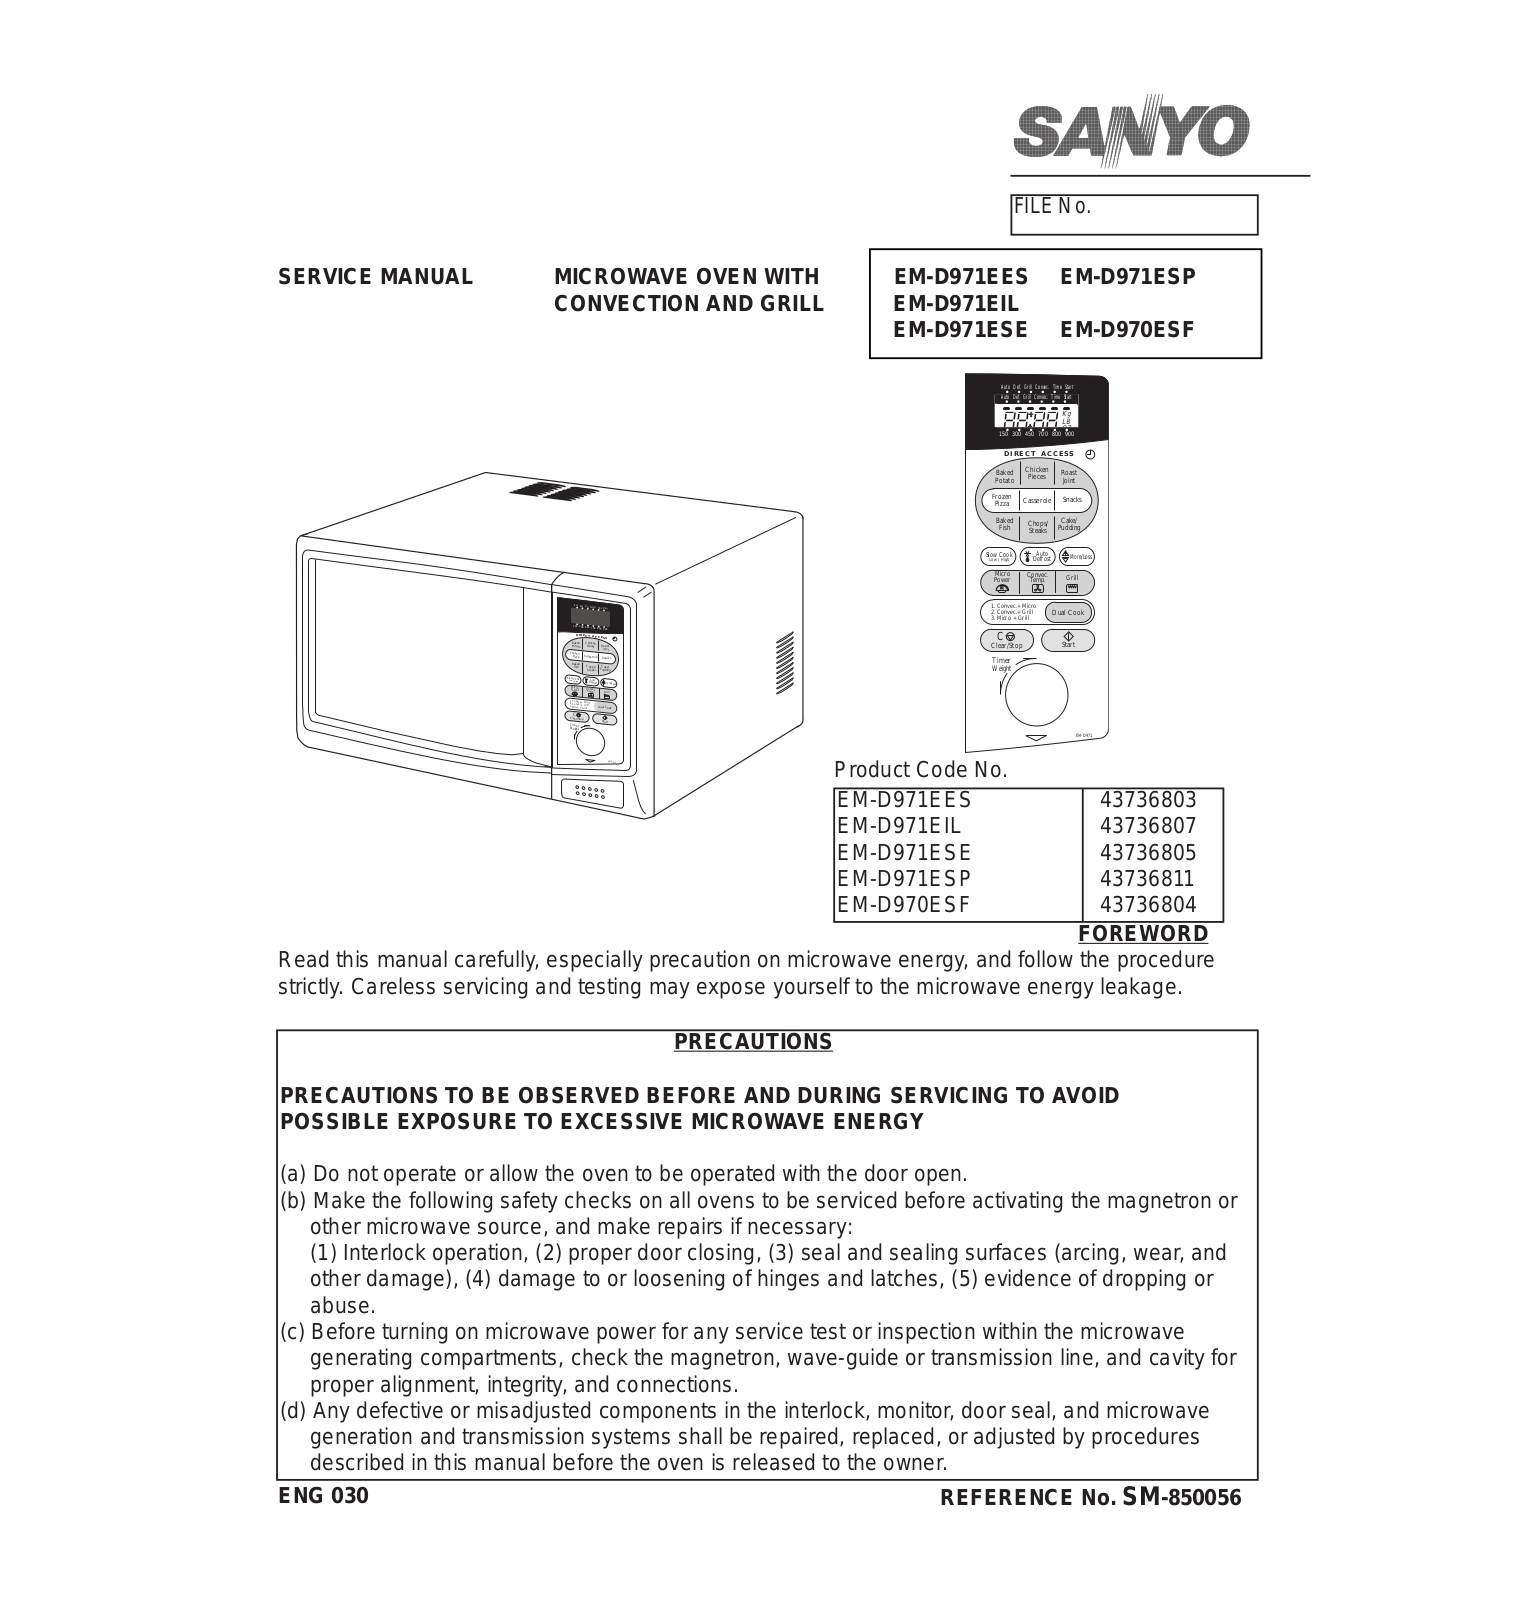 Sanyo EM-D970, EM-D971 Service Manual